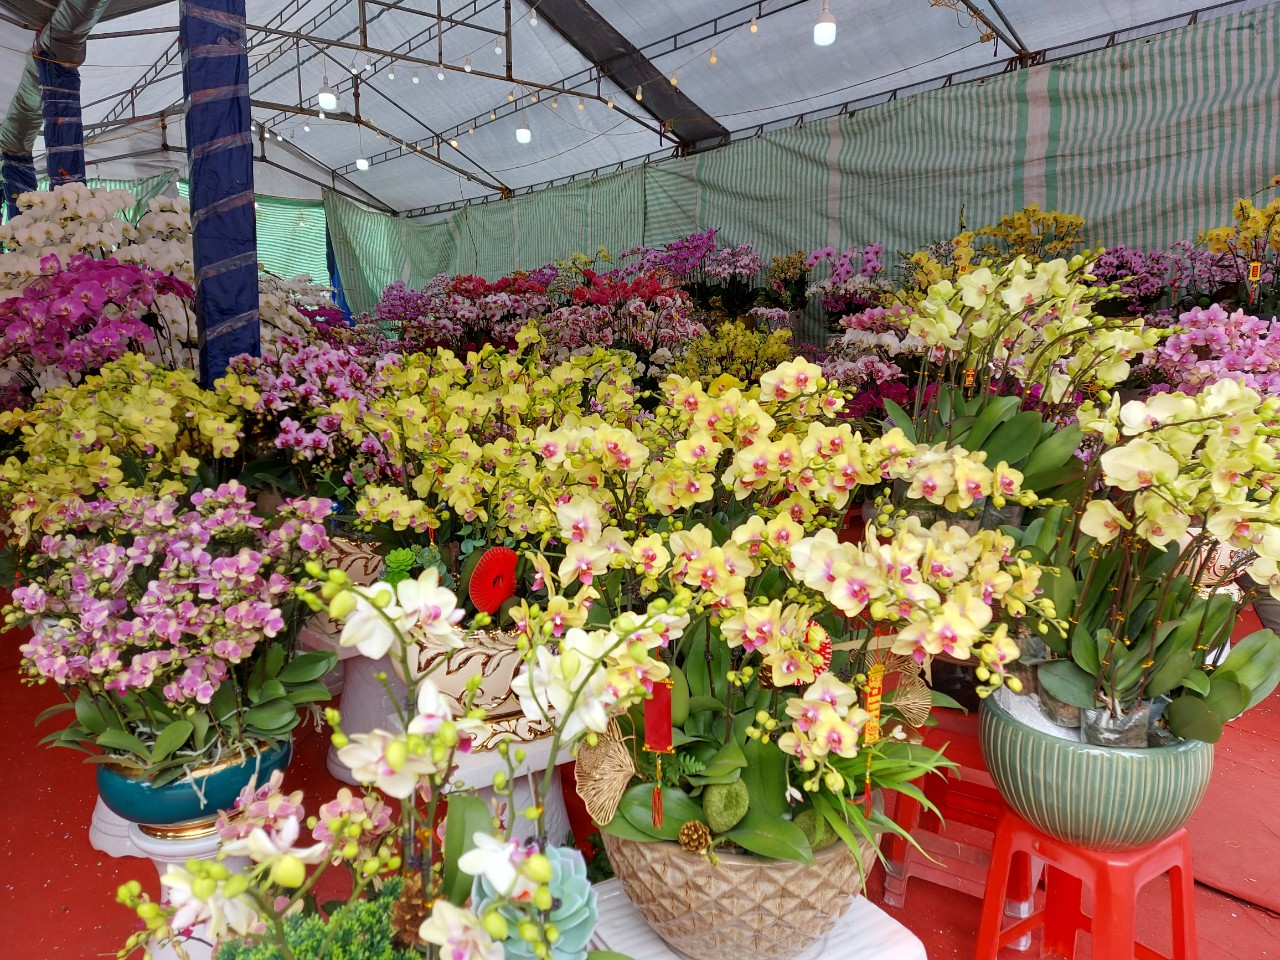 Hoa được lấy từ các nhà vườn ở khắp nơi, cung ứng nhiều nhất từ các nông trại hoa công nghệ ở Đà Lạt, Hưng Yên, TPHCM…